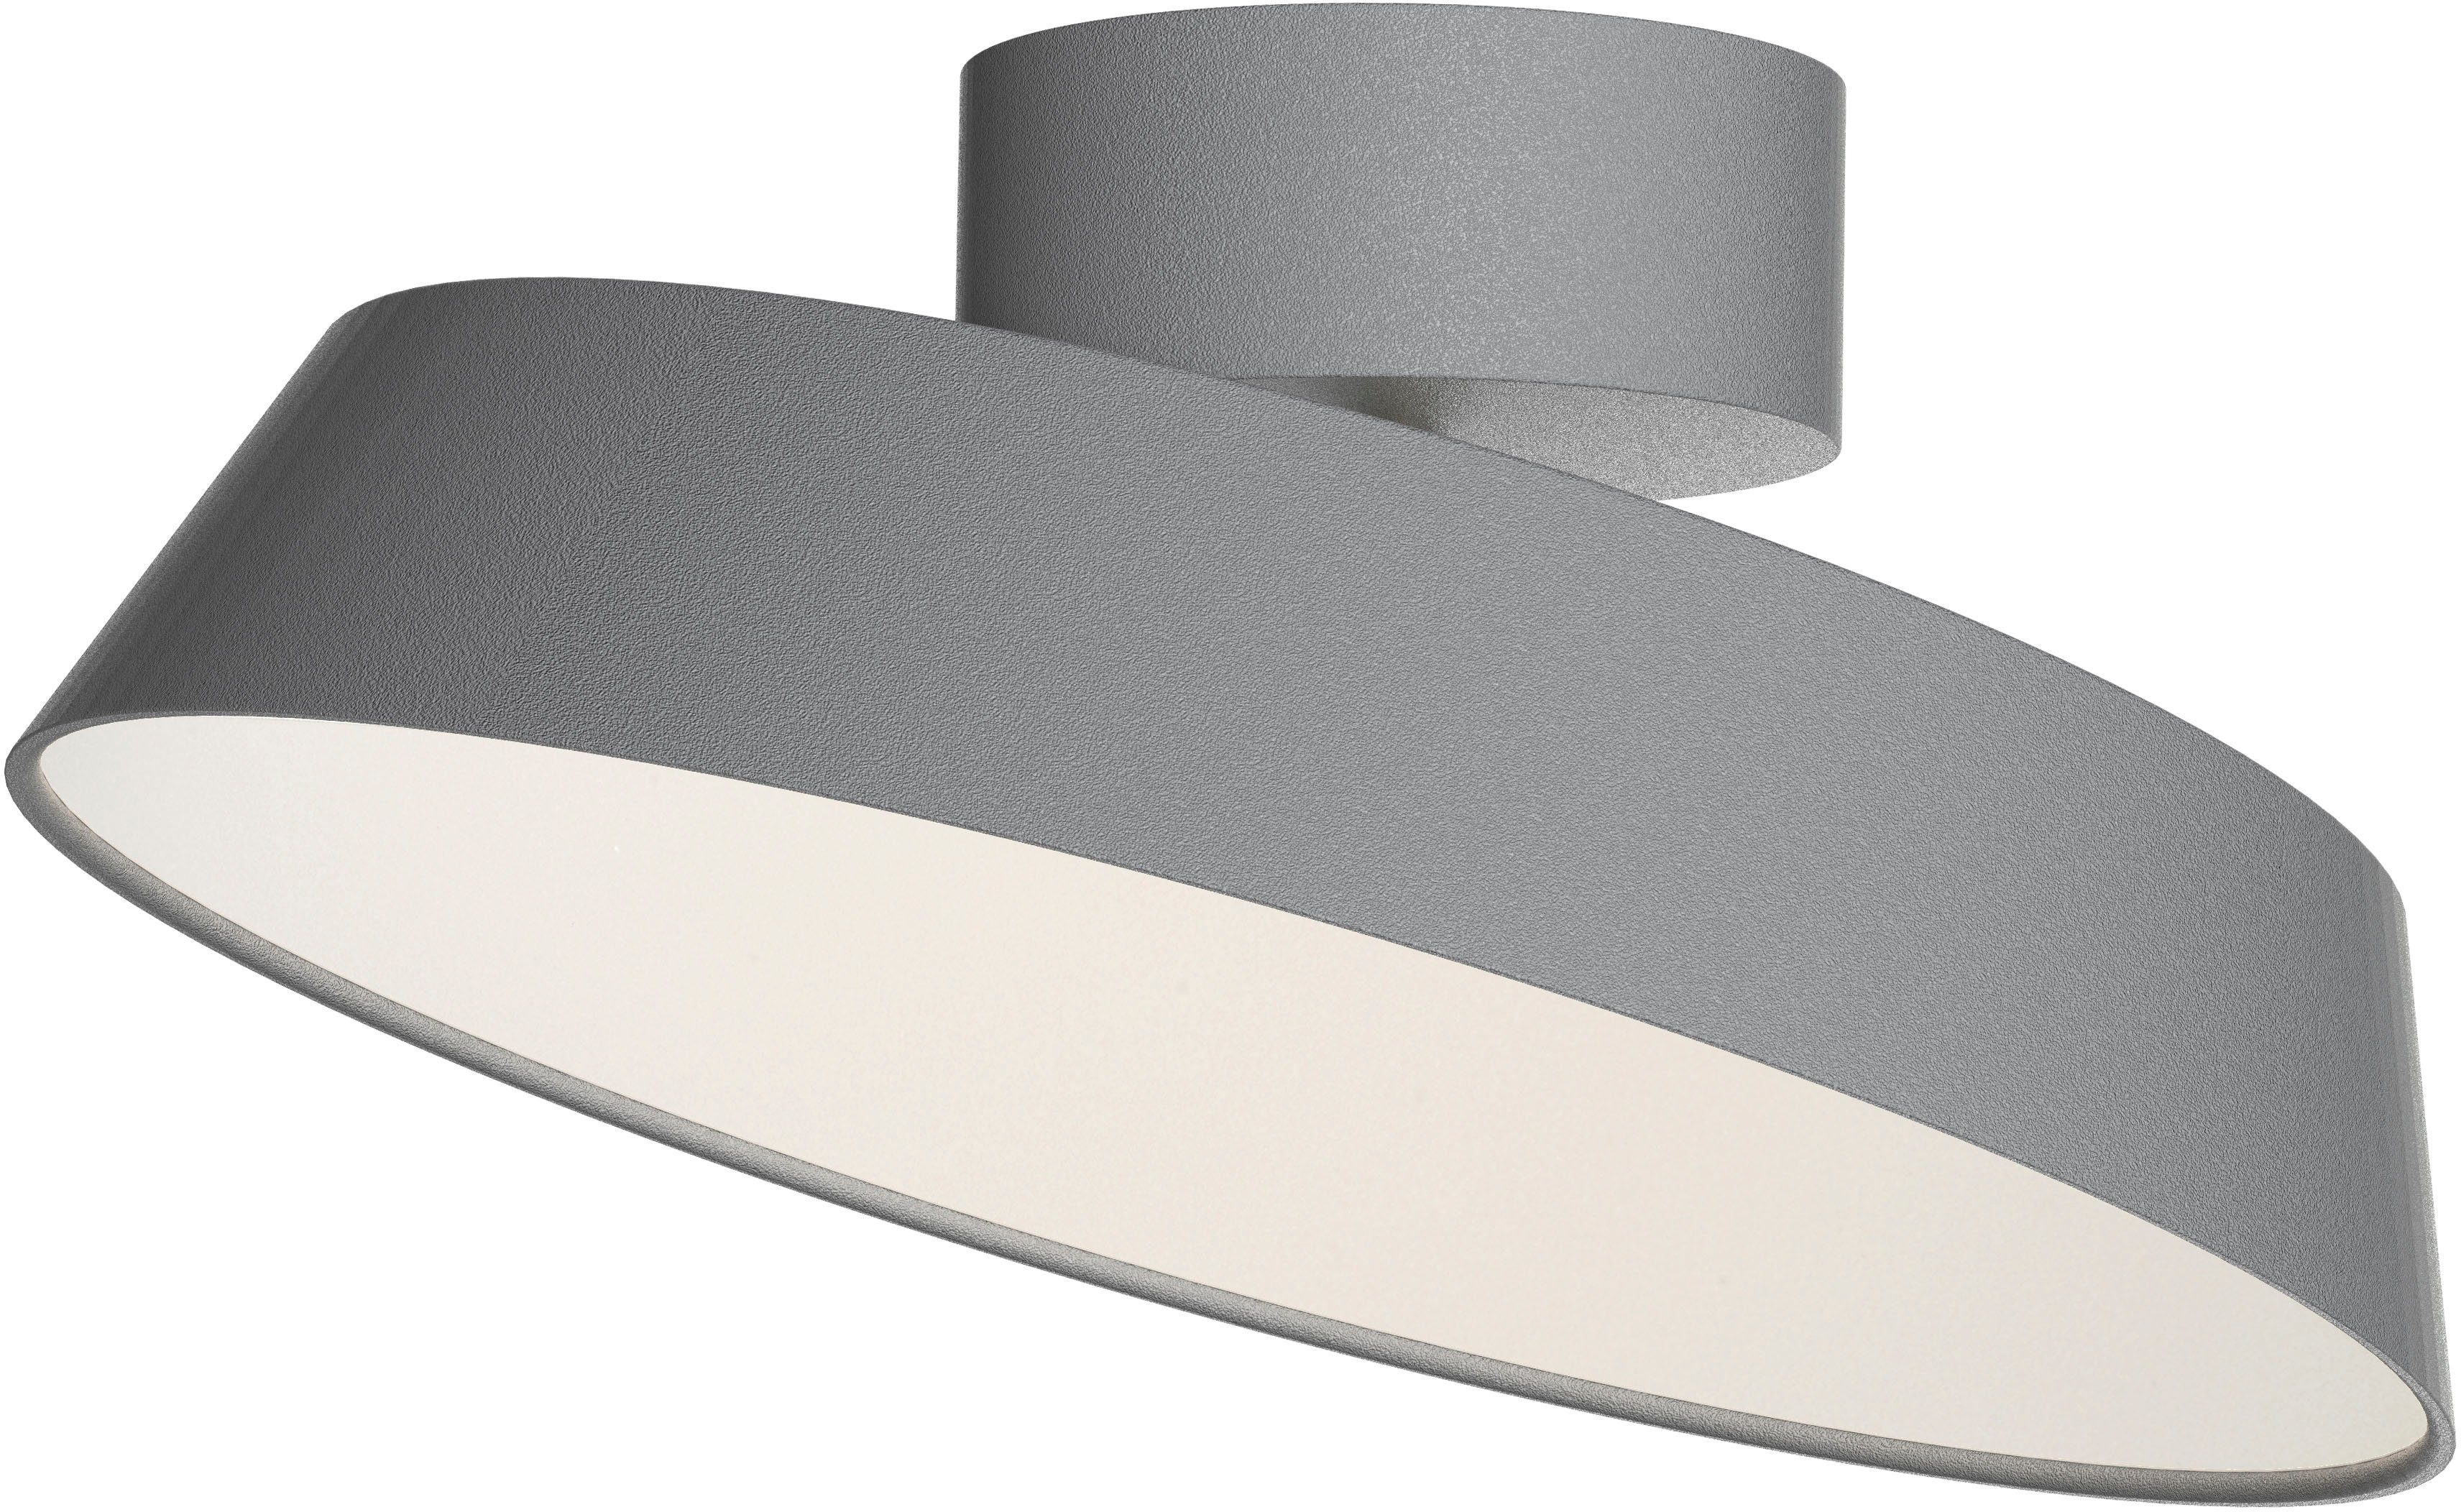 design for the und Inkl. Kaito LED integriert, fest Tischfuß, Tischklemme Wandhalterung Deckenleuchte people Dim, LED